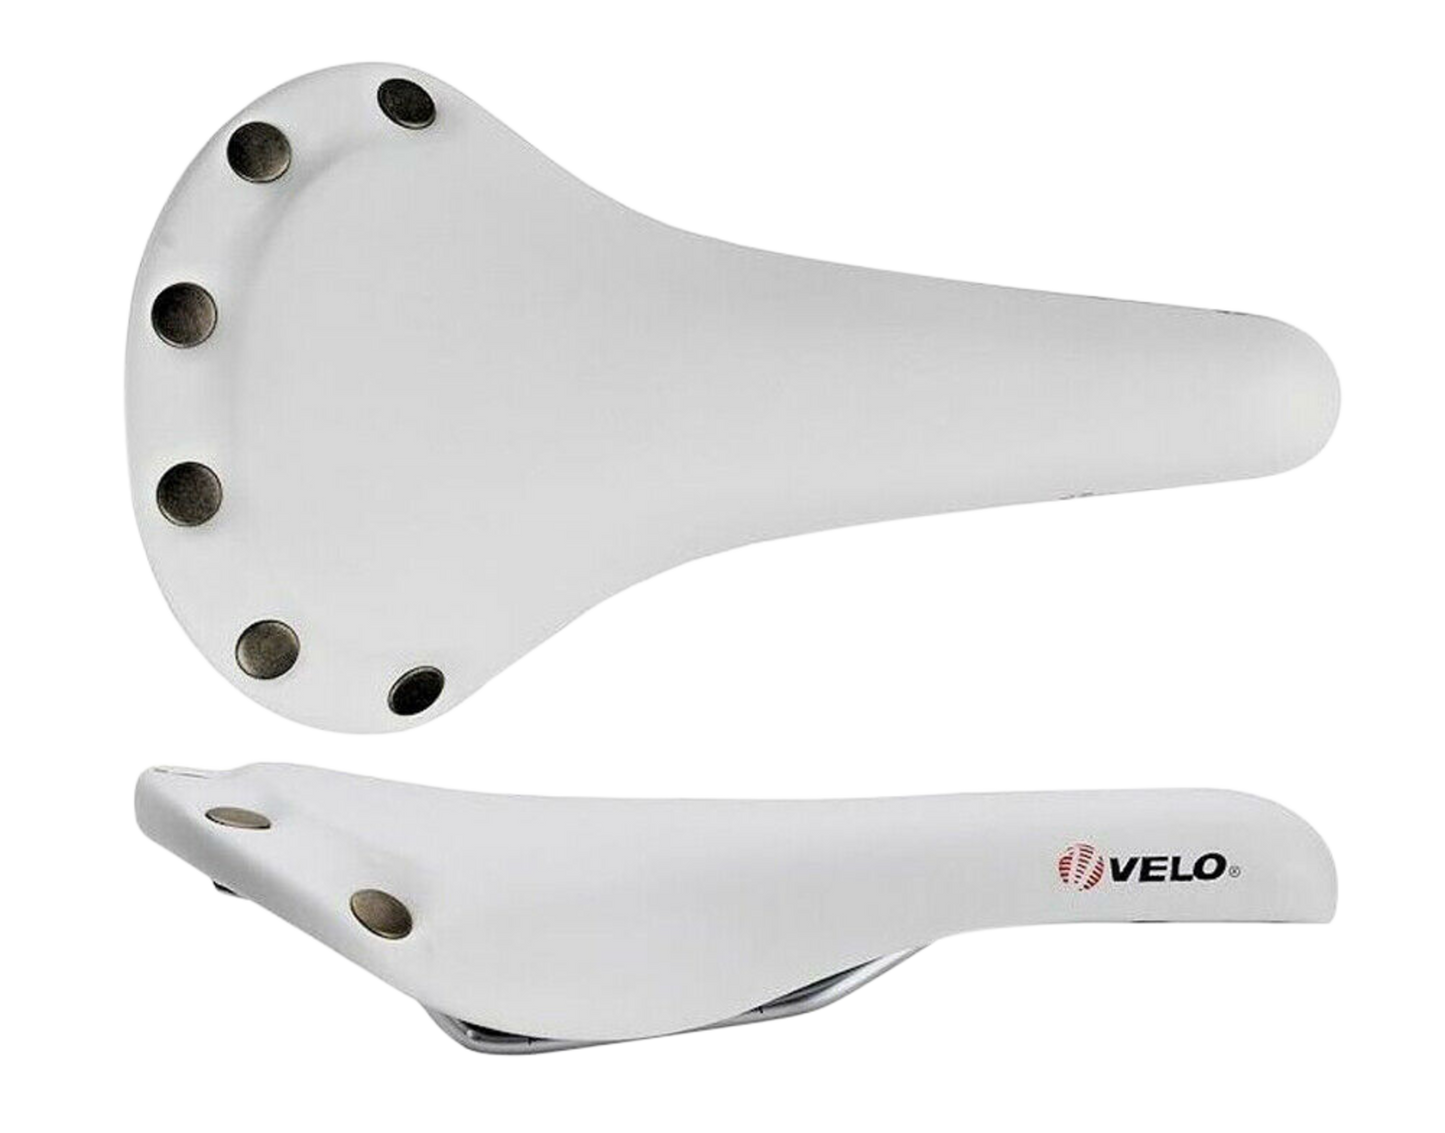 Velo VL-1221 Studded Saddle White White / - White -  Reid Cycles AU